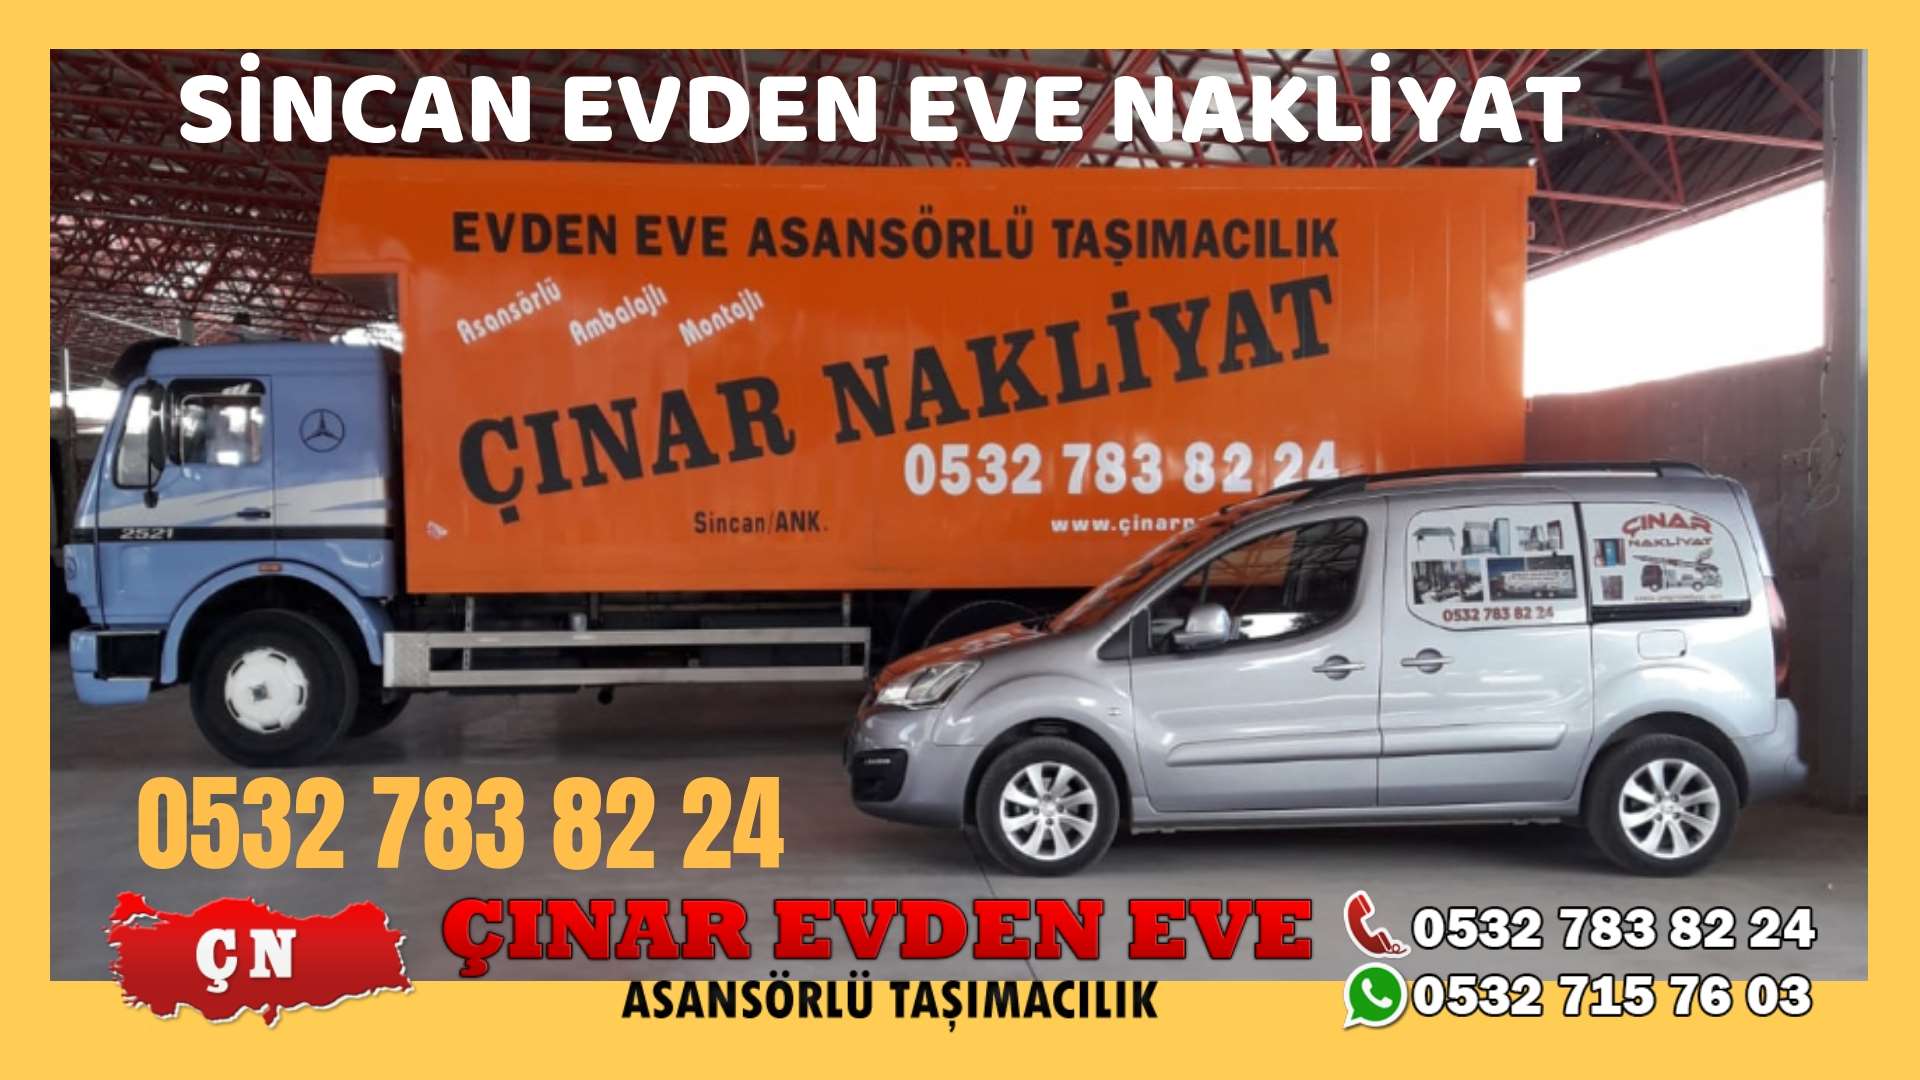 Ankara Polatlı Evden eve ev taşıma sincan nakliye fiyatları 0532 715 76 03